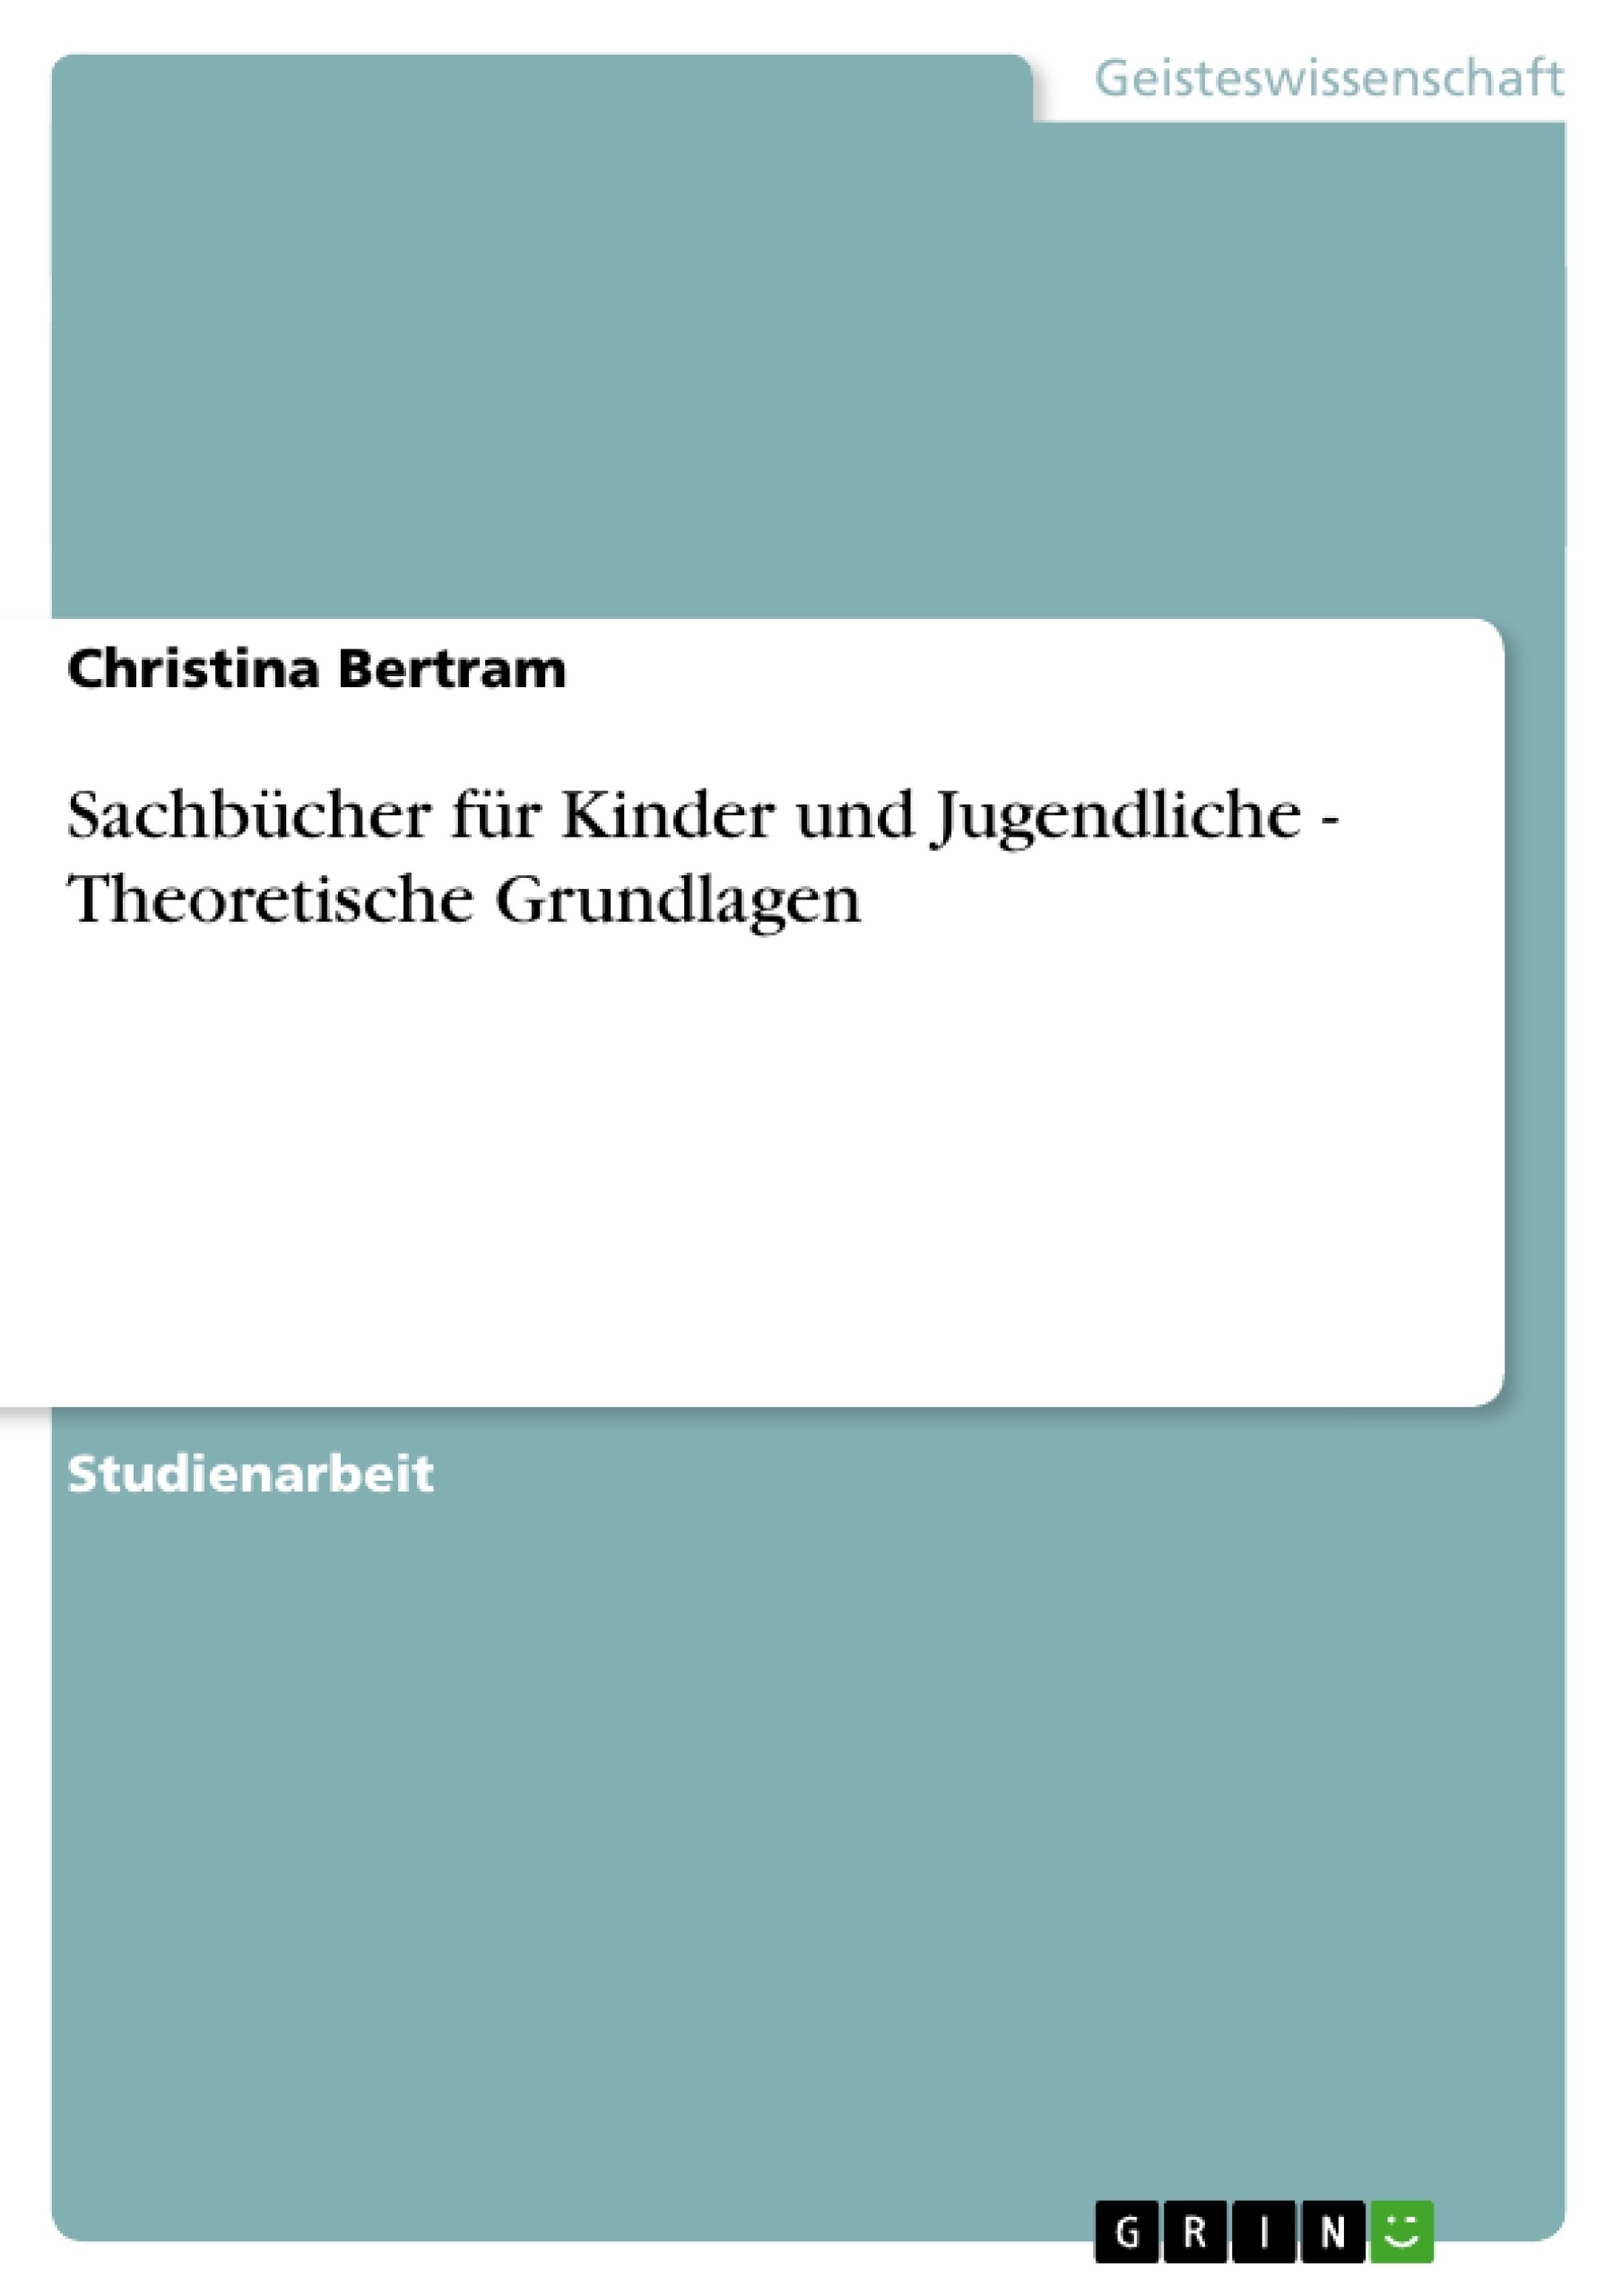 Título: Sachbücher für Kinder und Jugendliche - Theoretische Grundlagen